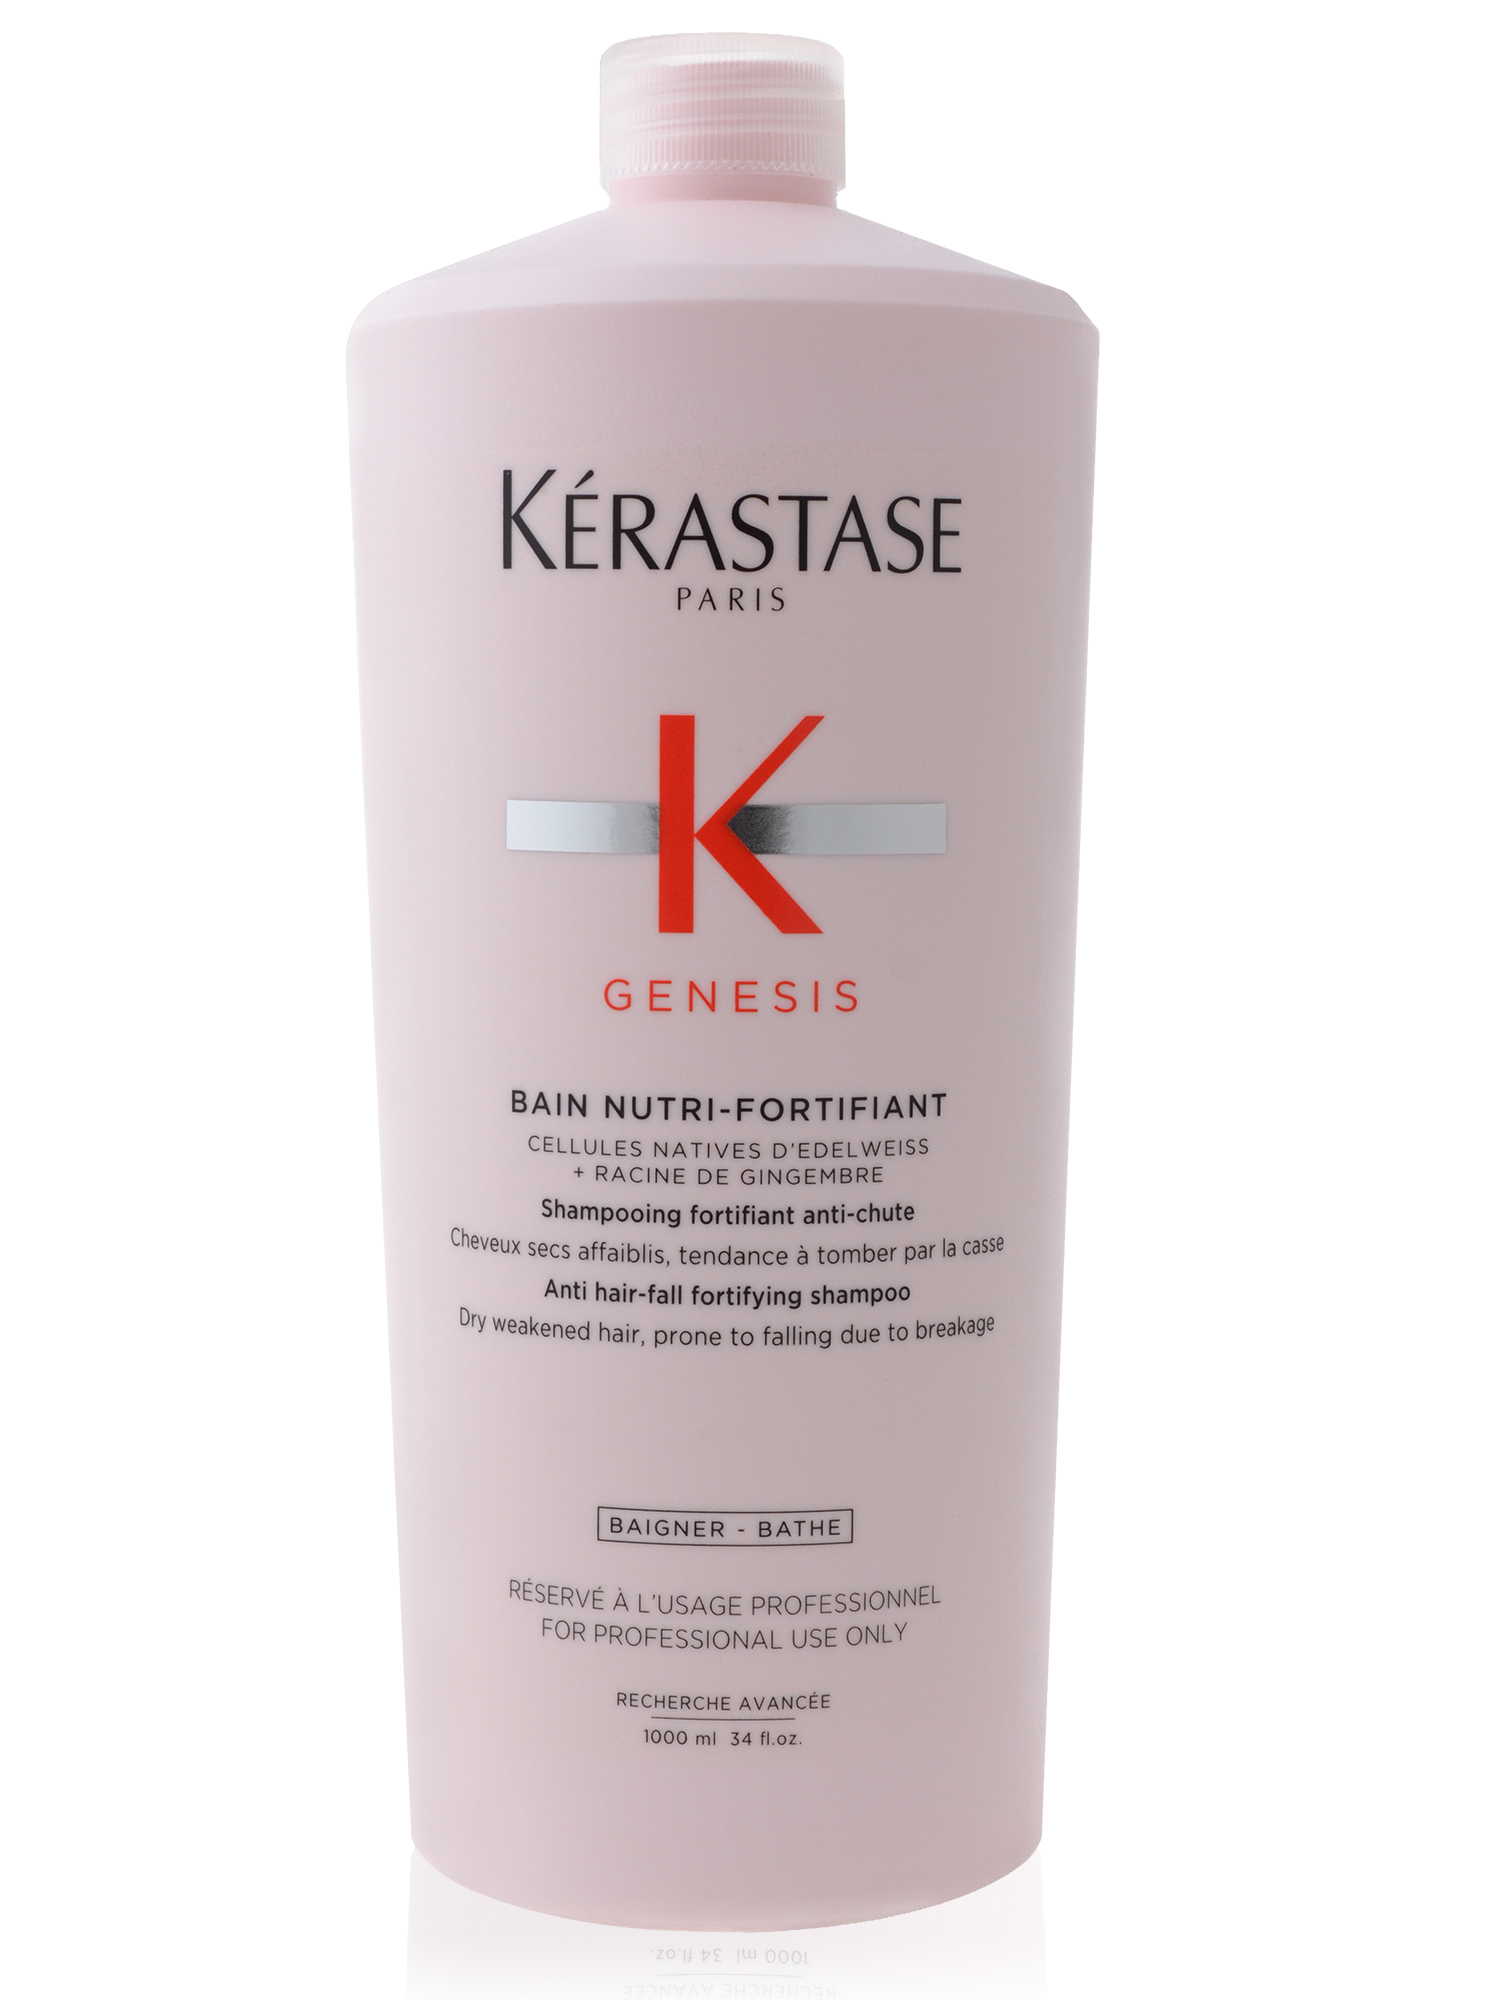 Vyživující šampon pro suché vlasy se sklonem k padání Kérastase Genesis - 1000 ml + dárek zdarma